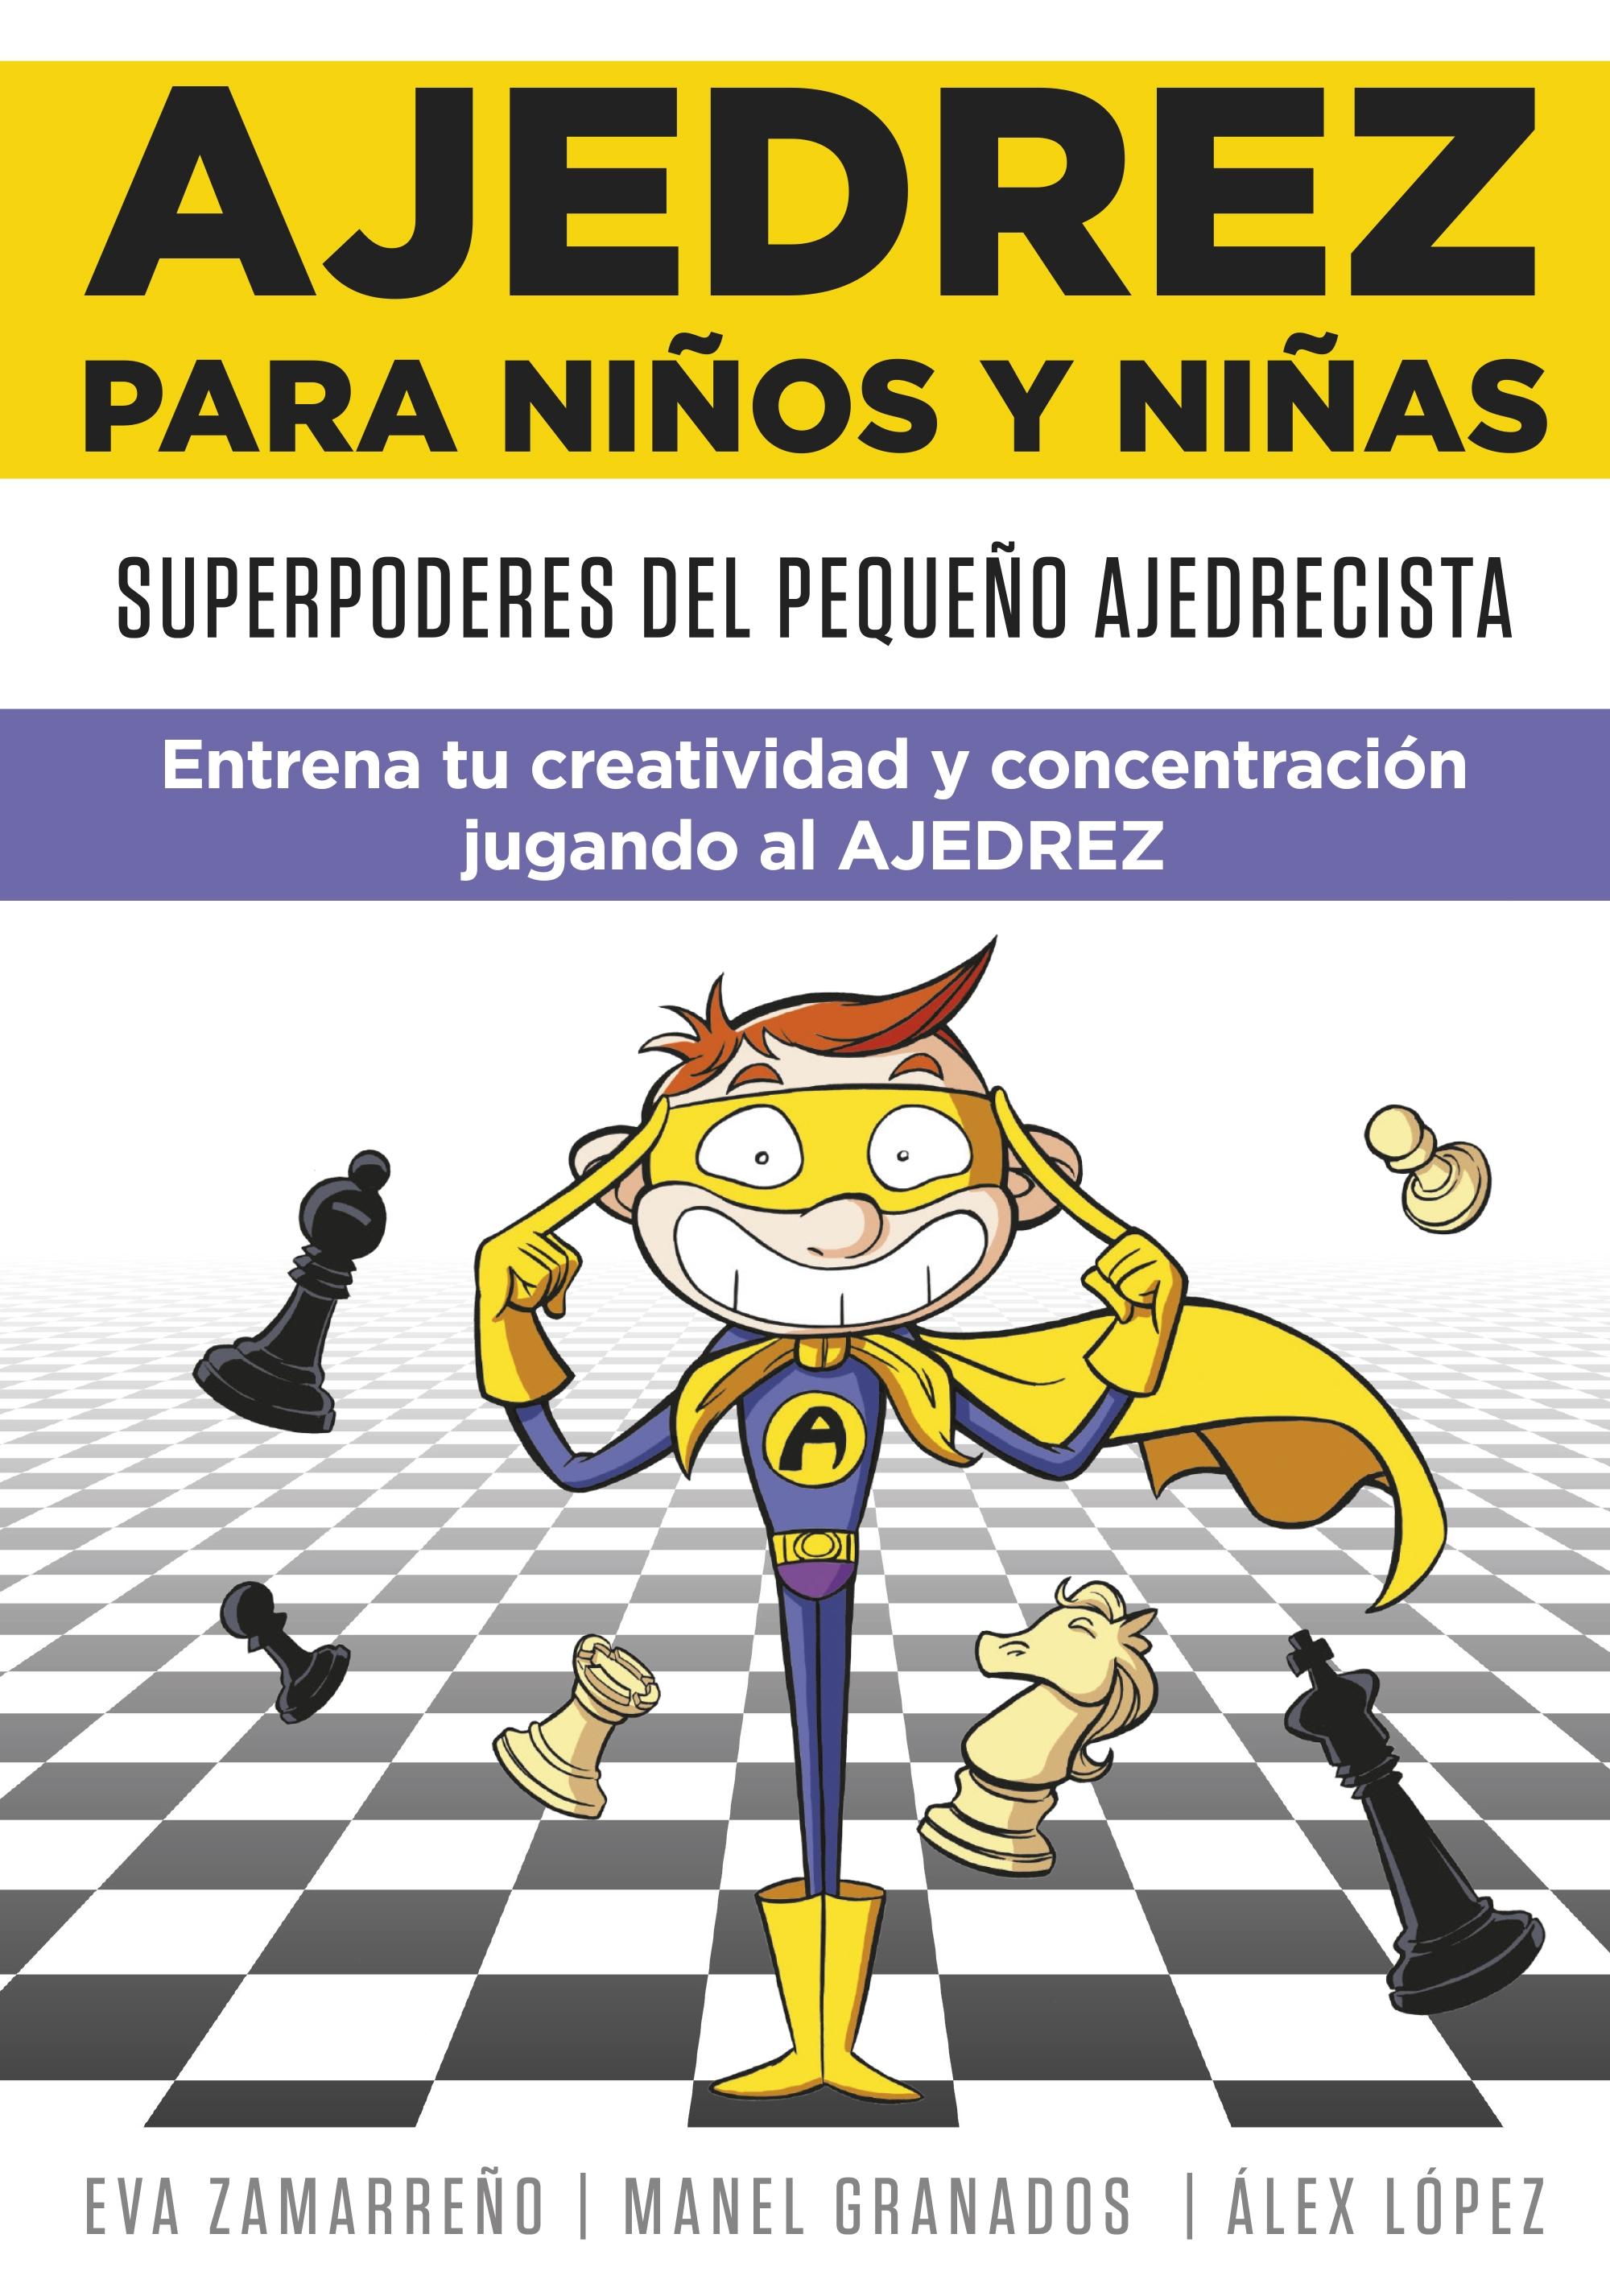 Ajedrez para niños y niñas "Superpoderes del pequeño ajedrecista. Entrena tu creatividad y concentra". 